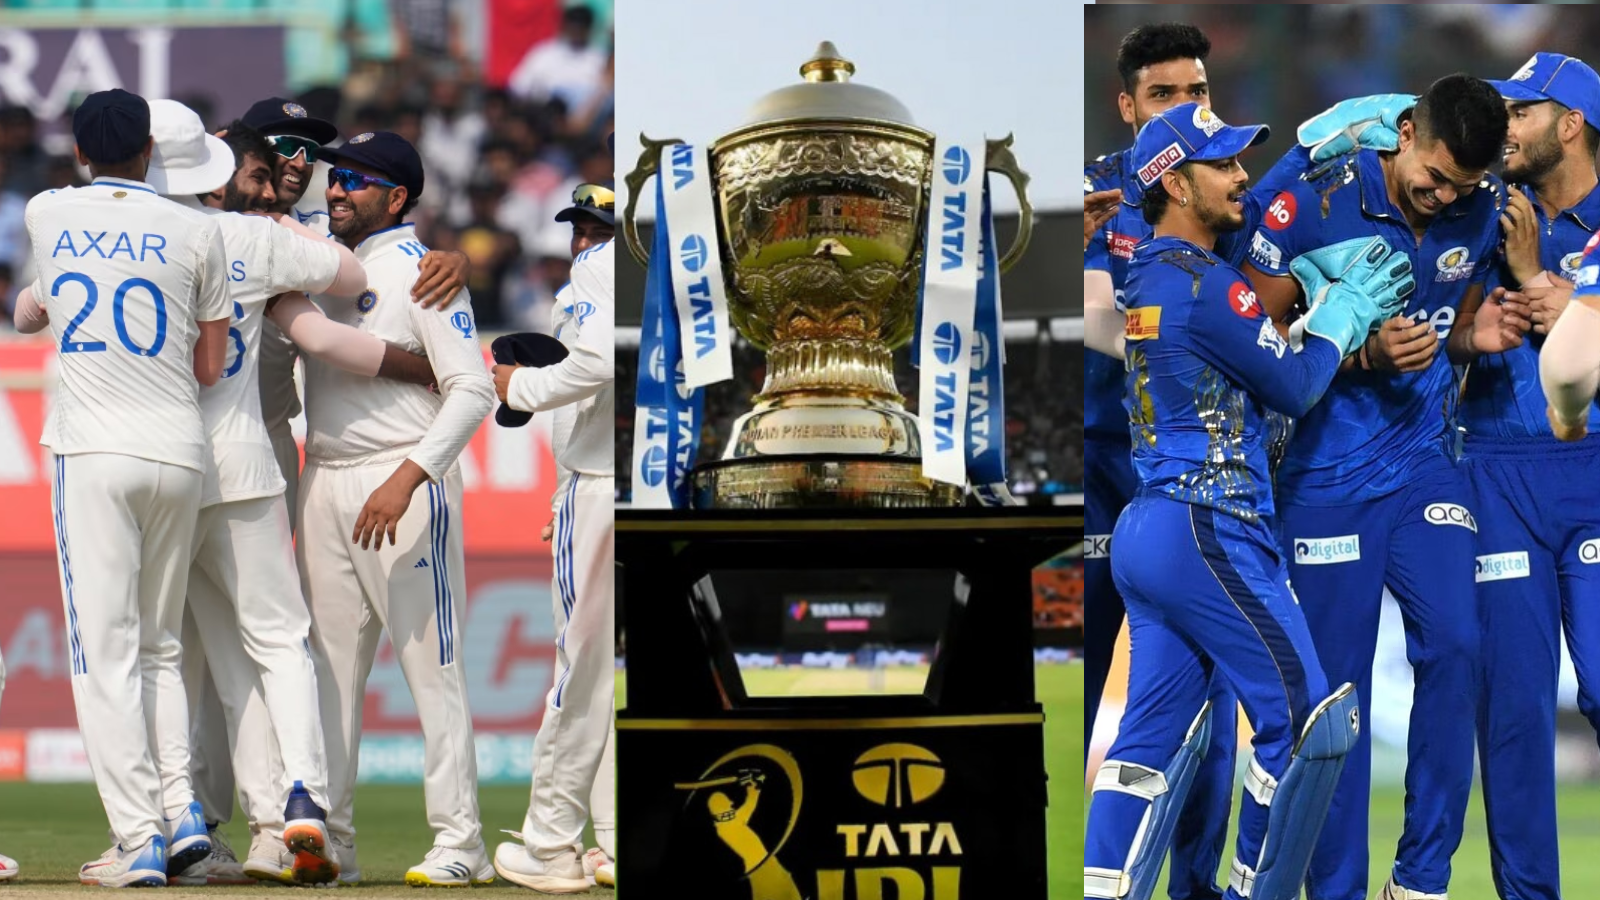 Skip Test Play Ipl, Cricket News, Team India: টিম ইন্ডিয়ার এই খেলোয়াড়রা ইংল্যান্ড সিরিজের পর টেস্ট ক্রিকেট থেকে নেবেন অবসর, শুধুমাত্র টাকার জন্য খেলতে চান আইপিএল !!